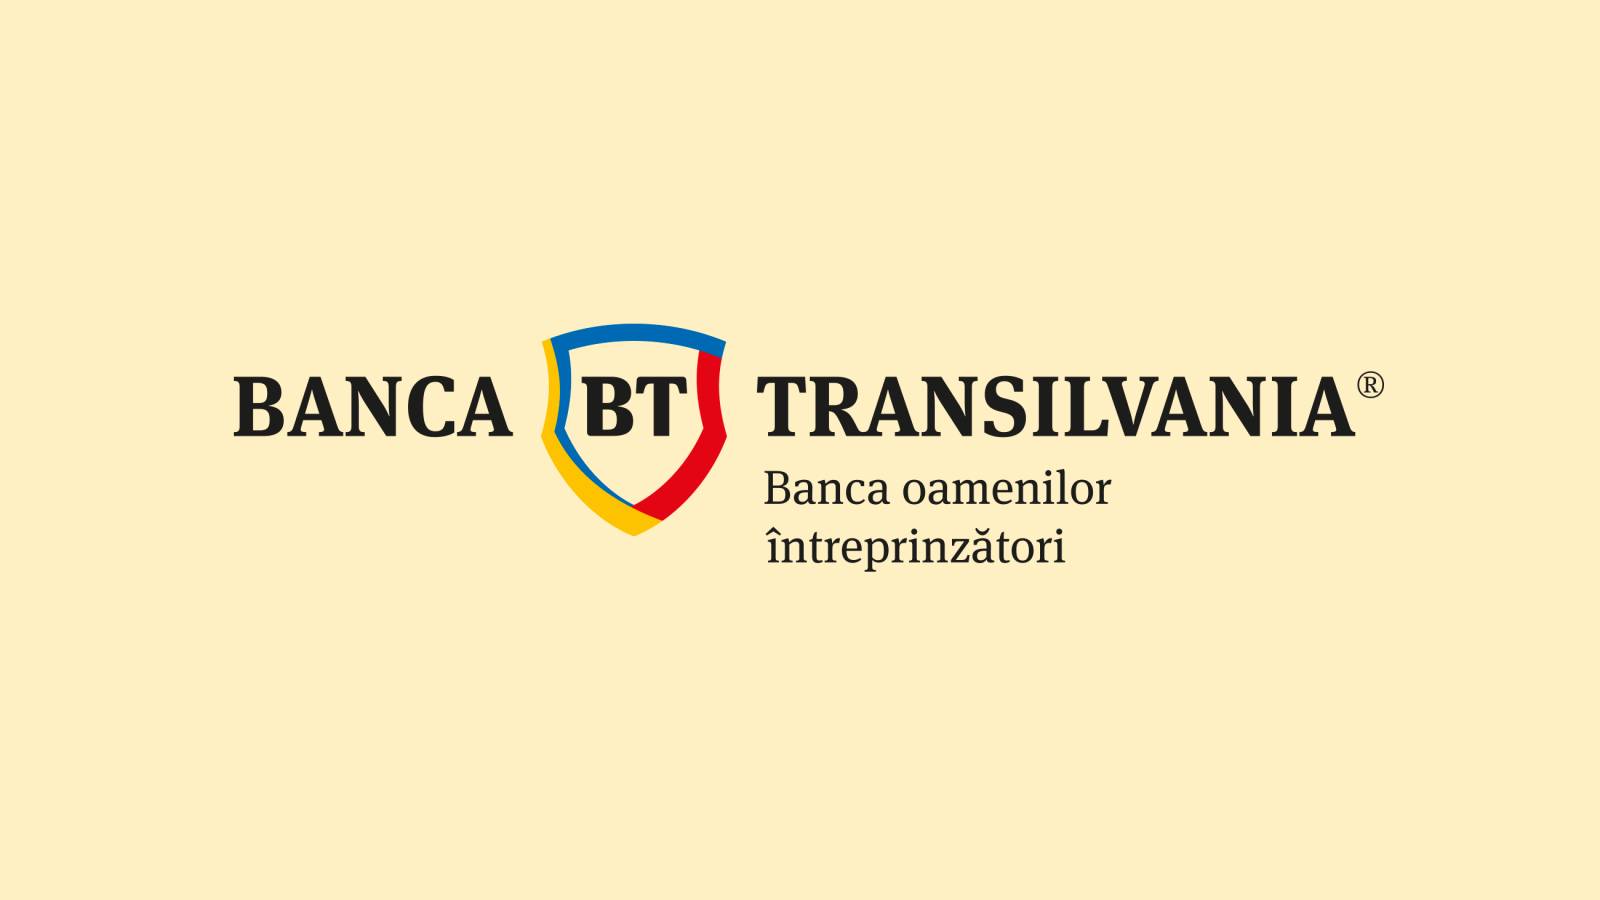 Oficjalna akcja BANCA Transilvania LAST MINUTE, dostępna wyłącznie dla rumuńskich klientów